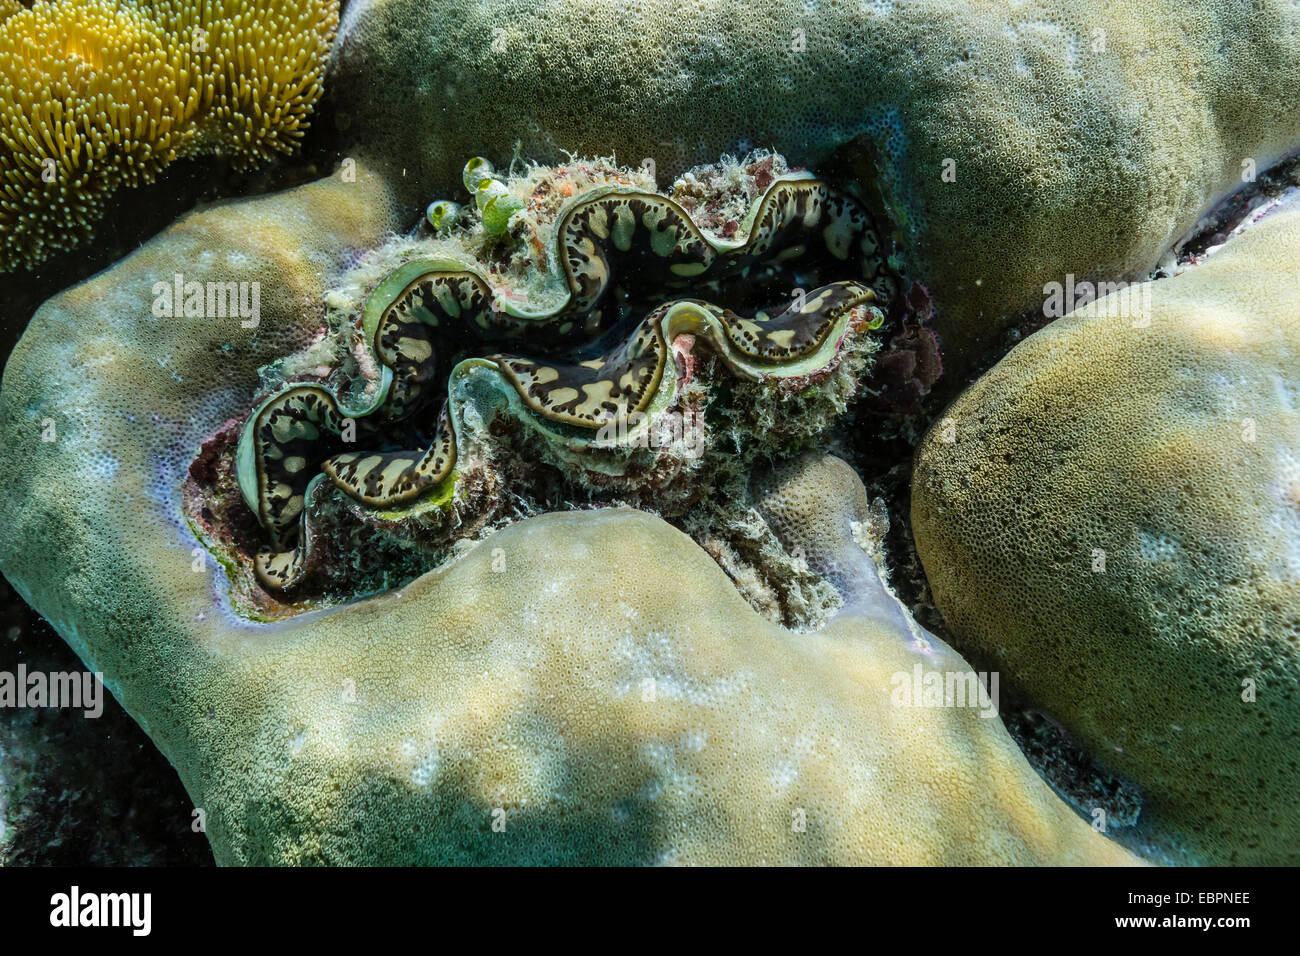 Hart- und Weichkorallen und Tridacna Muschel auf Unterwasser Riff auf Insel Jaco, Timorsee, Osttimor, Südostasien, Asien Stockfoto